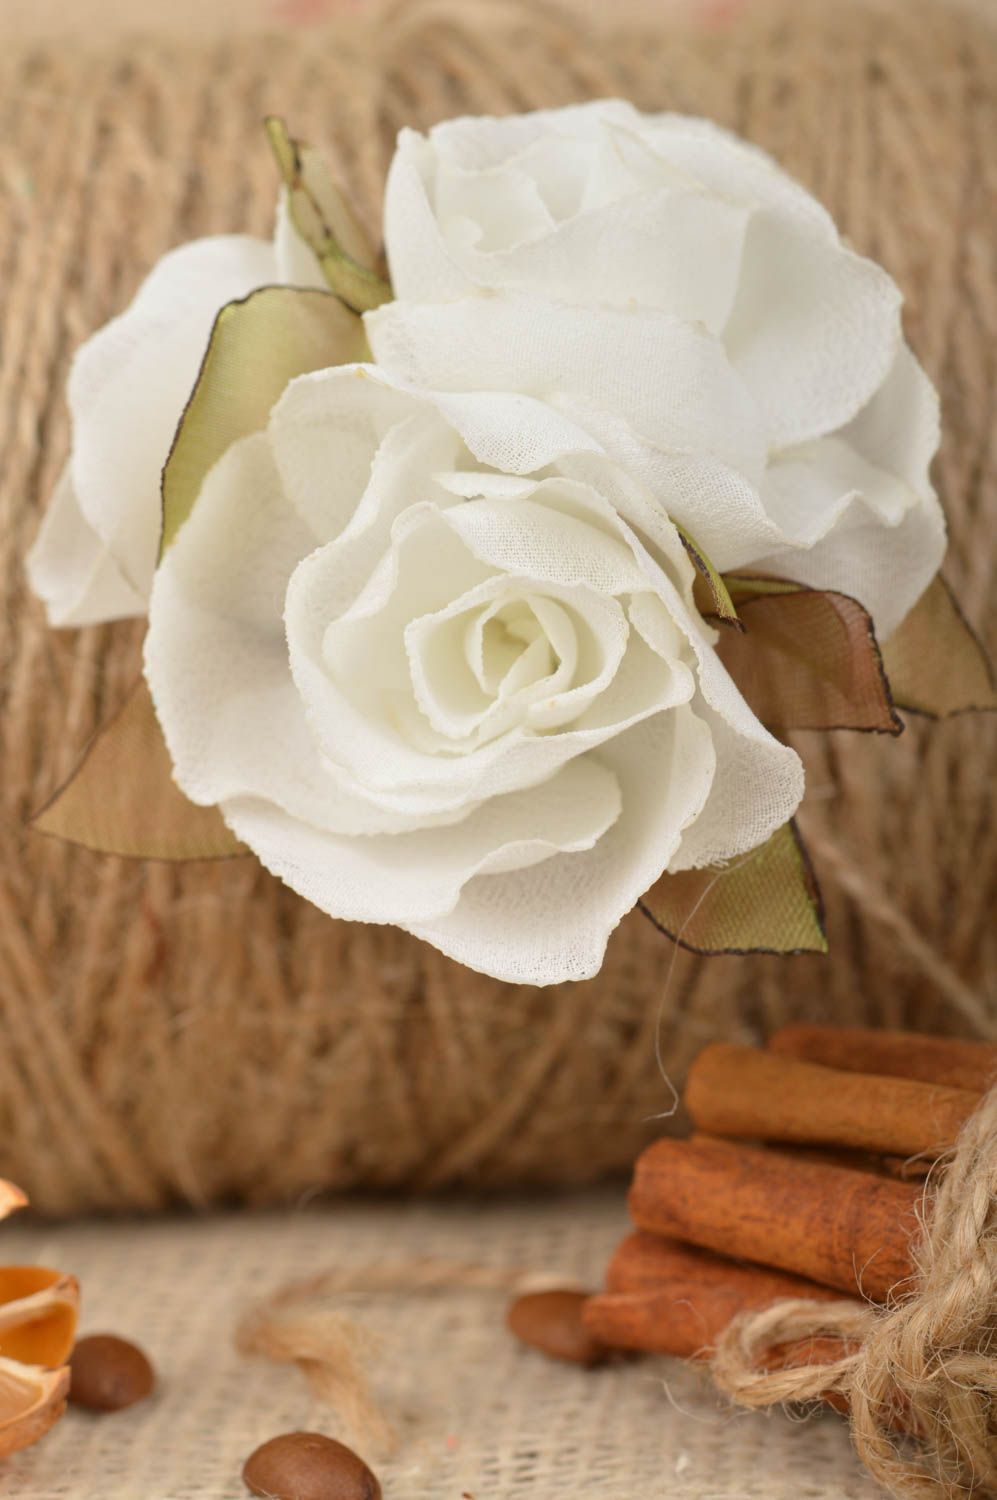 Broche artesanal pinza de pelo de tela en técnica kanzashi 3 rosas blancas foto 1